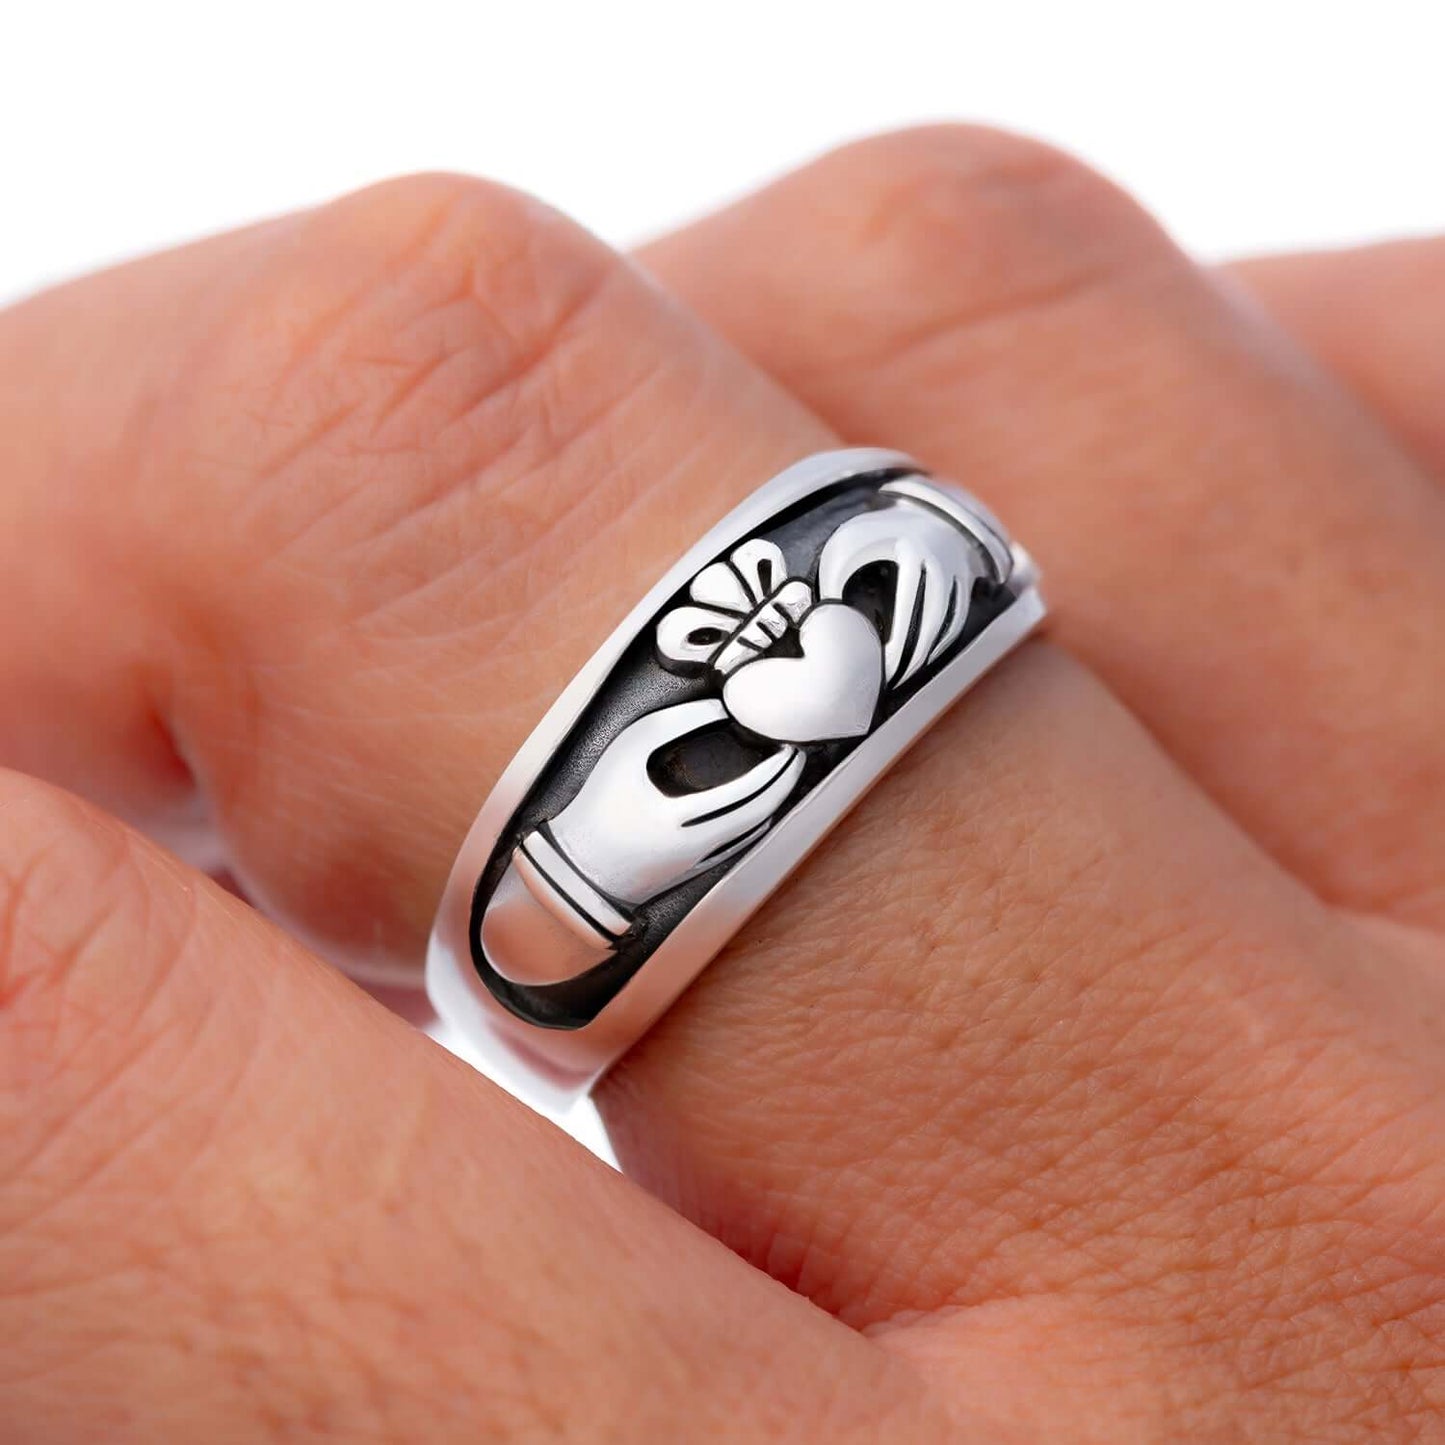 925 Sterling Silver Celtic Irish Claddagh Wedding Ring - SilverMania925